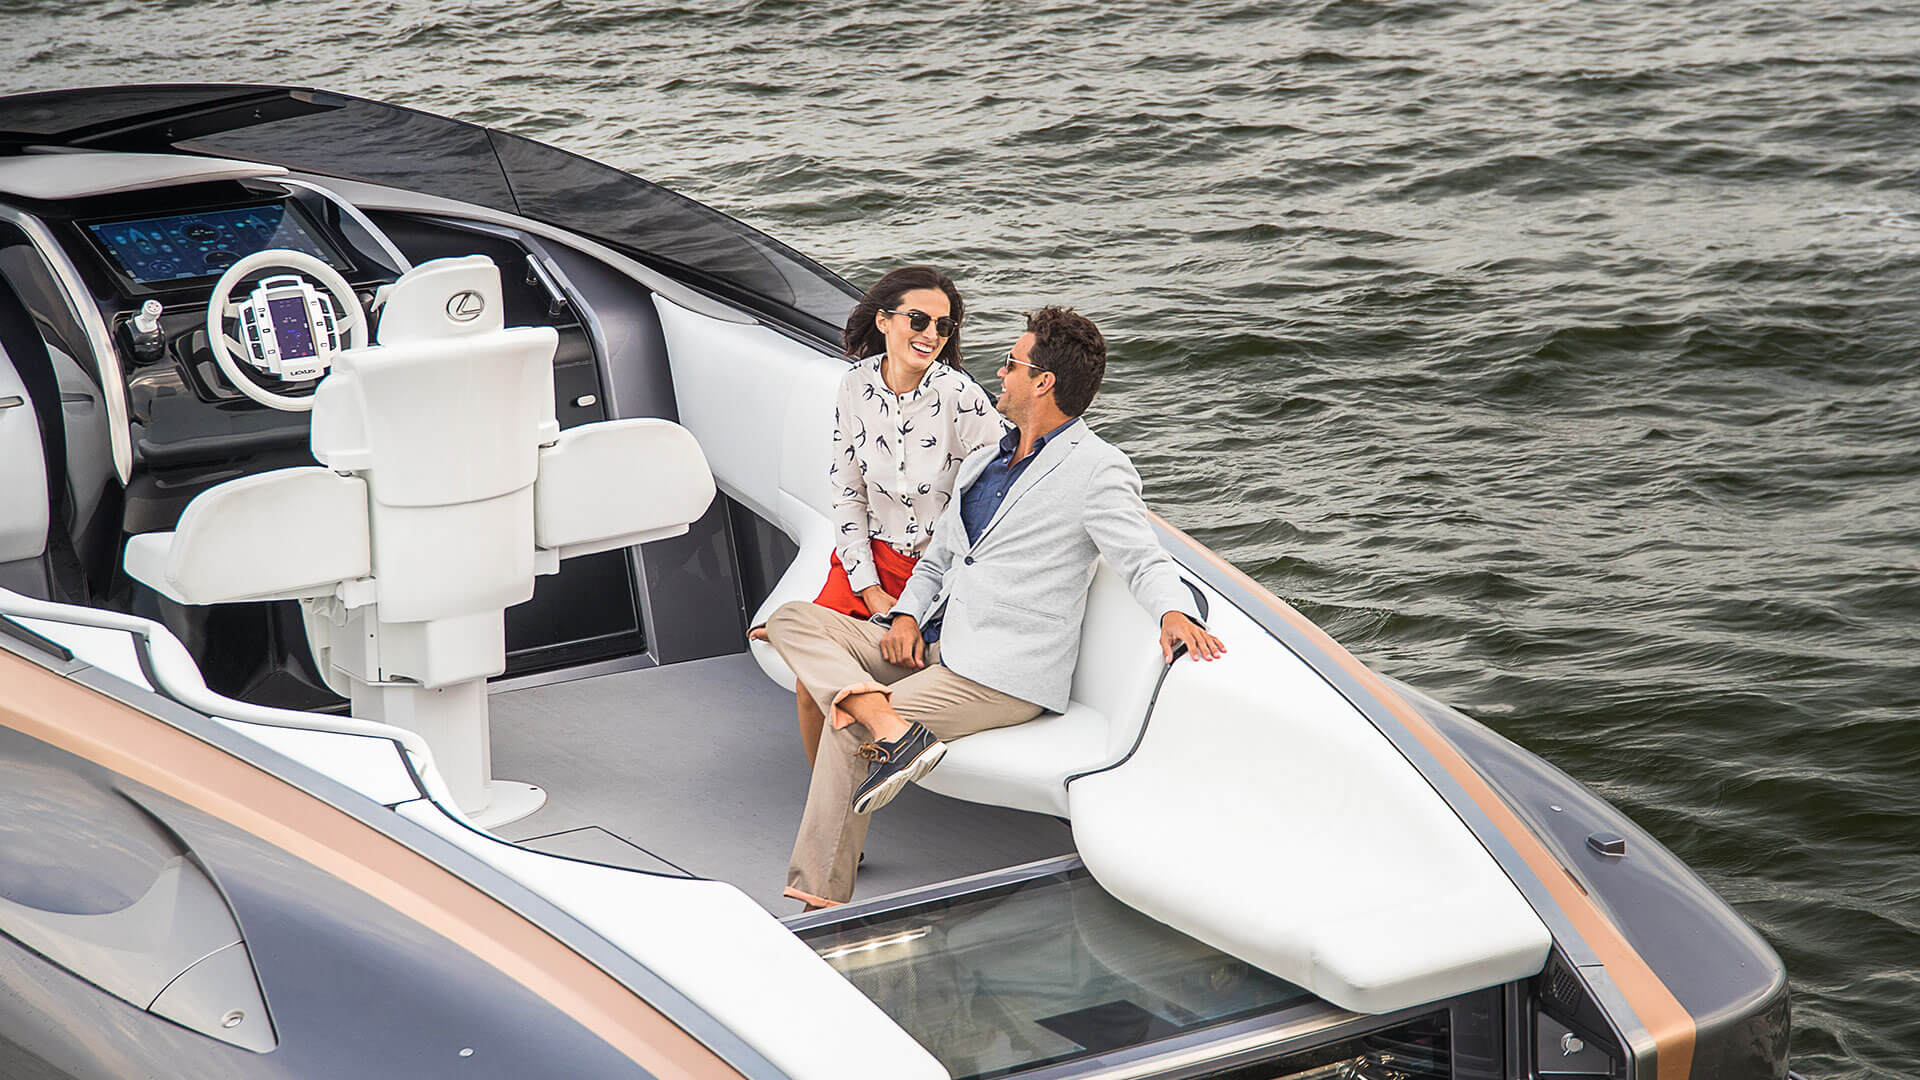 lexus reveals sports yacht concept lexus uk 15211453238n4kg